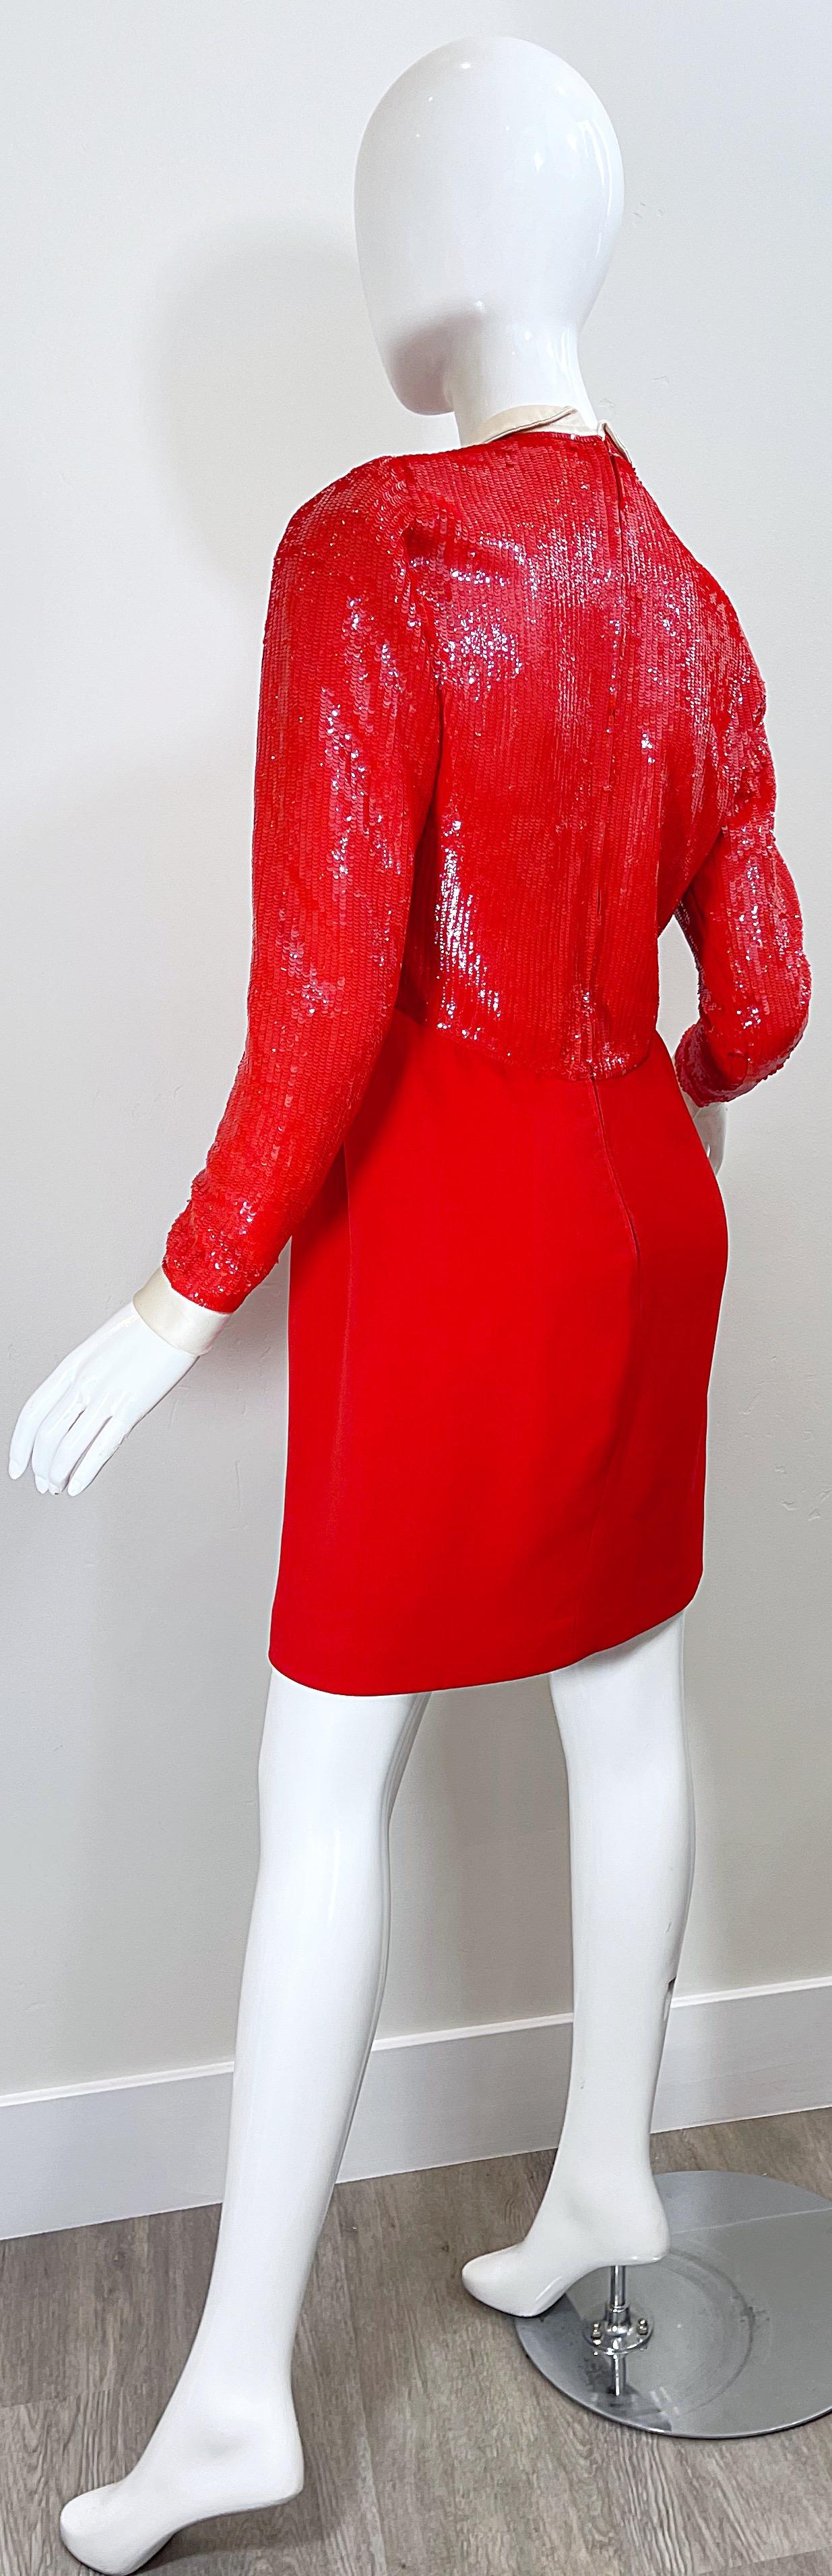 Geoffrey Beene 1980s Lipstick Red Faux Bolero Vintage 80s Tuxedo Dress  For Sale 8